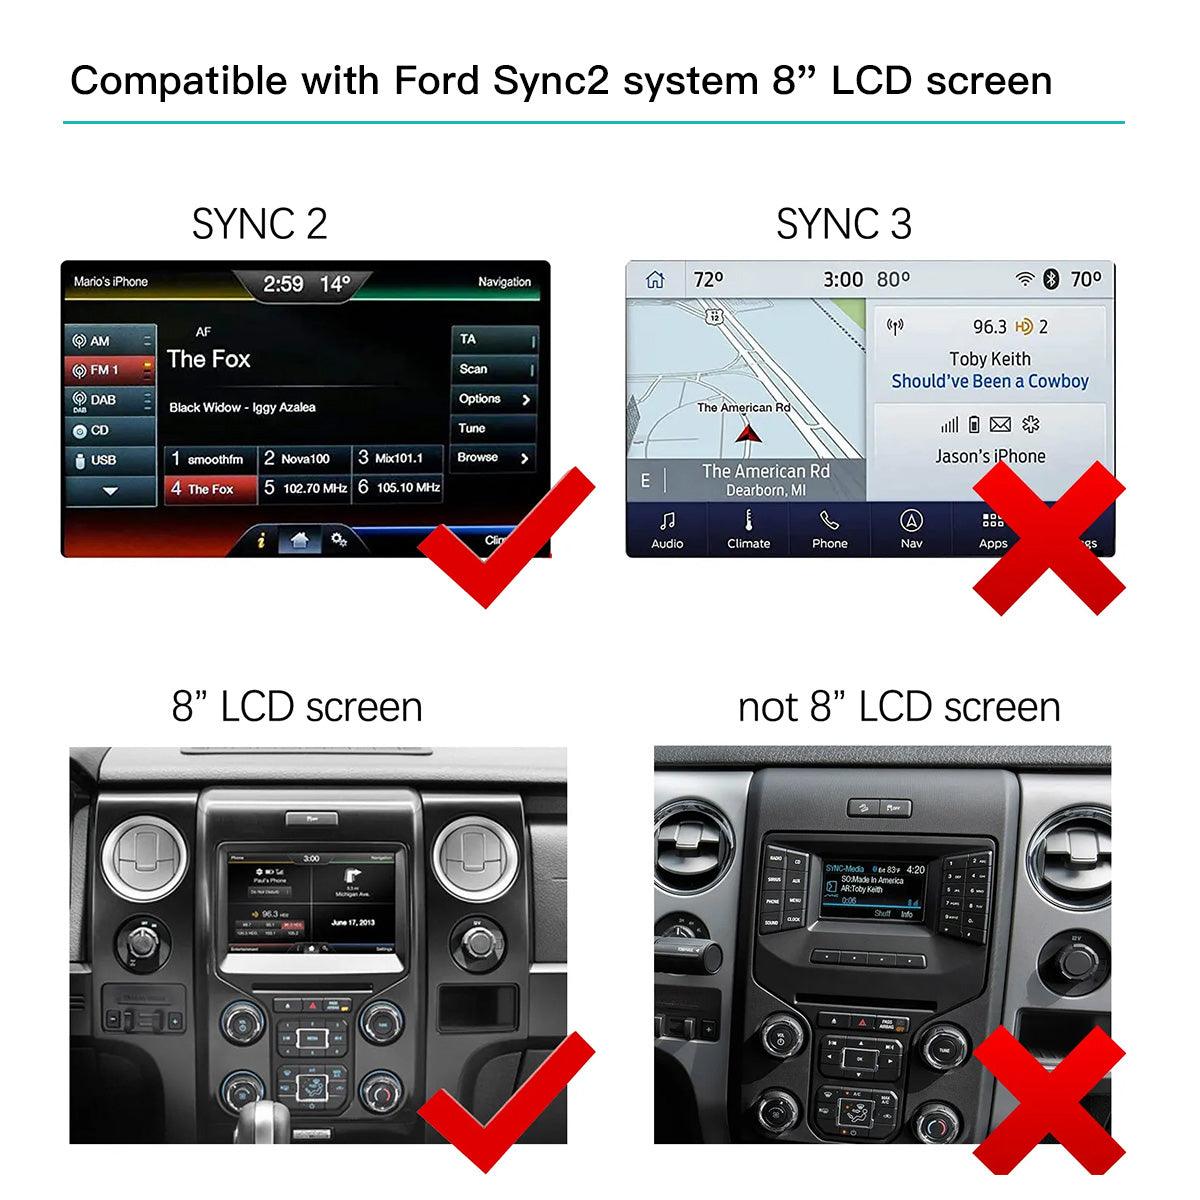 Nachrüsten von CarPlay & Android Auto am Ford Ka